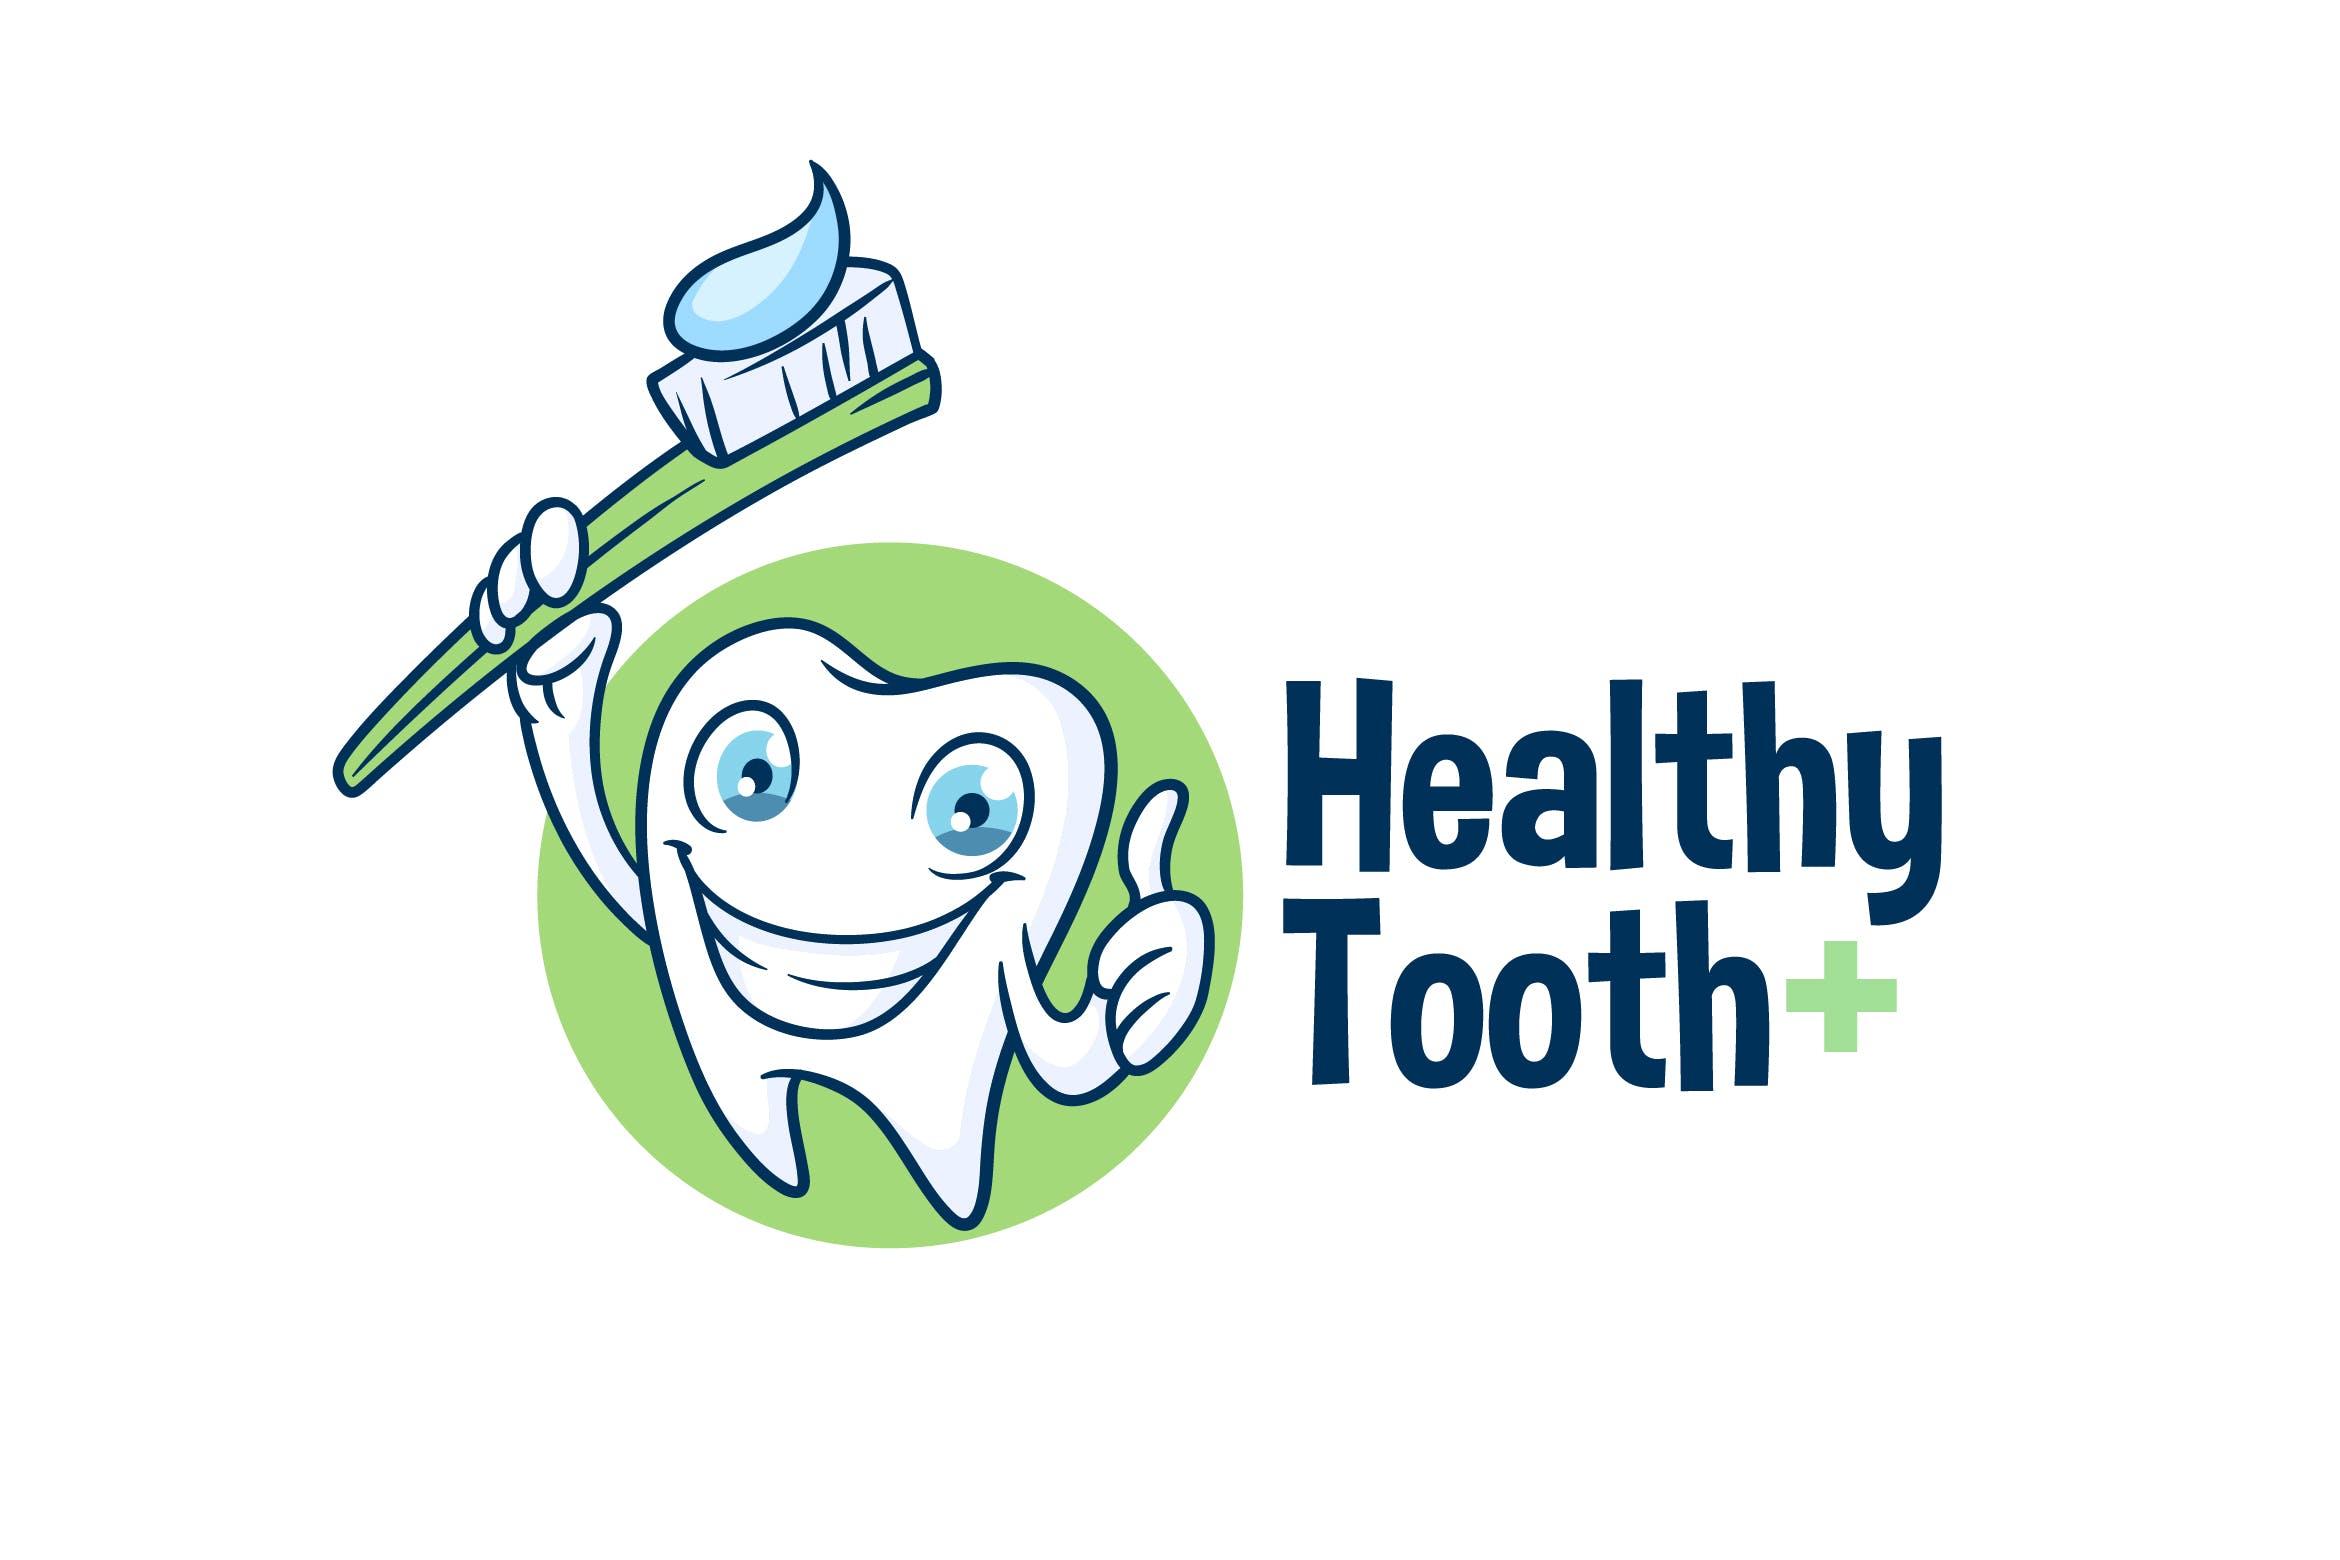 卡通形象牙膏品牌Logo设计模板 Healthy Tooth – Dental Character Mascot Logo插图